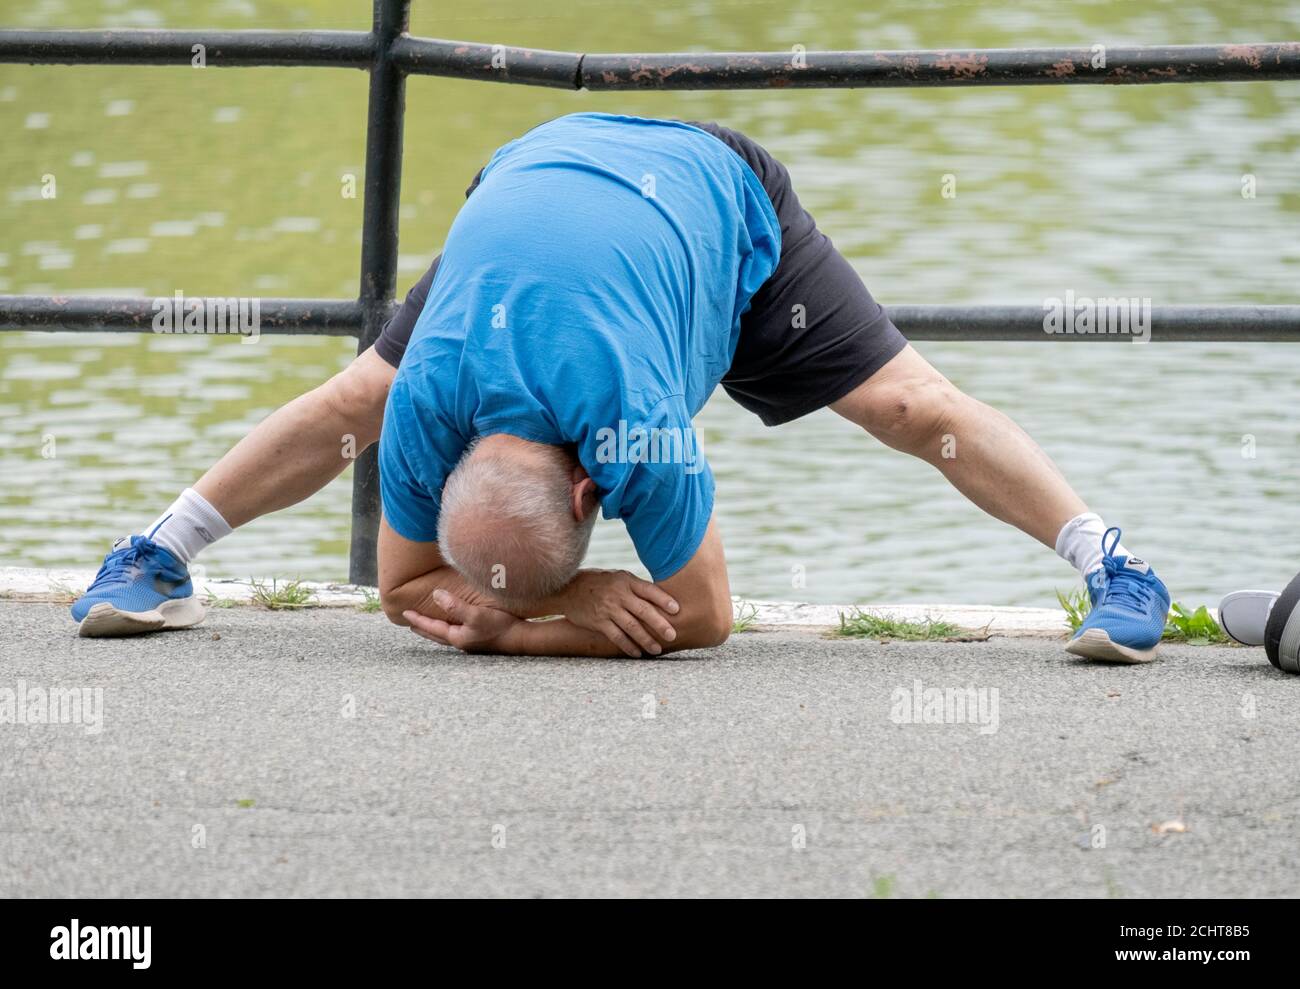 Ein flink flexibler Senior tut etwas extremes Stretching, während er sich für einen Übungsspaziergang aufwärmt. In einem Park in Queens, New York City. Stockfoto